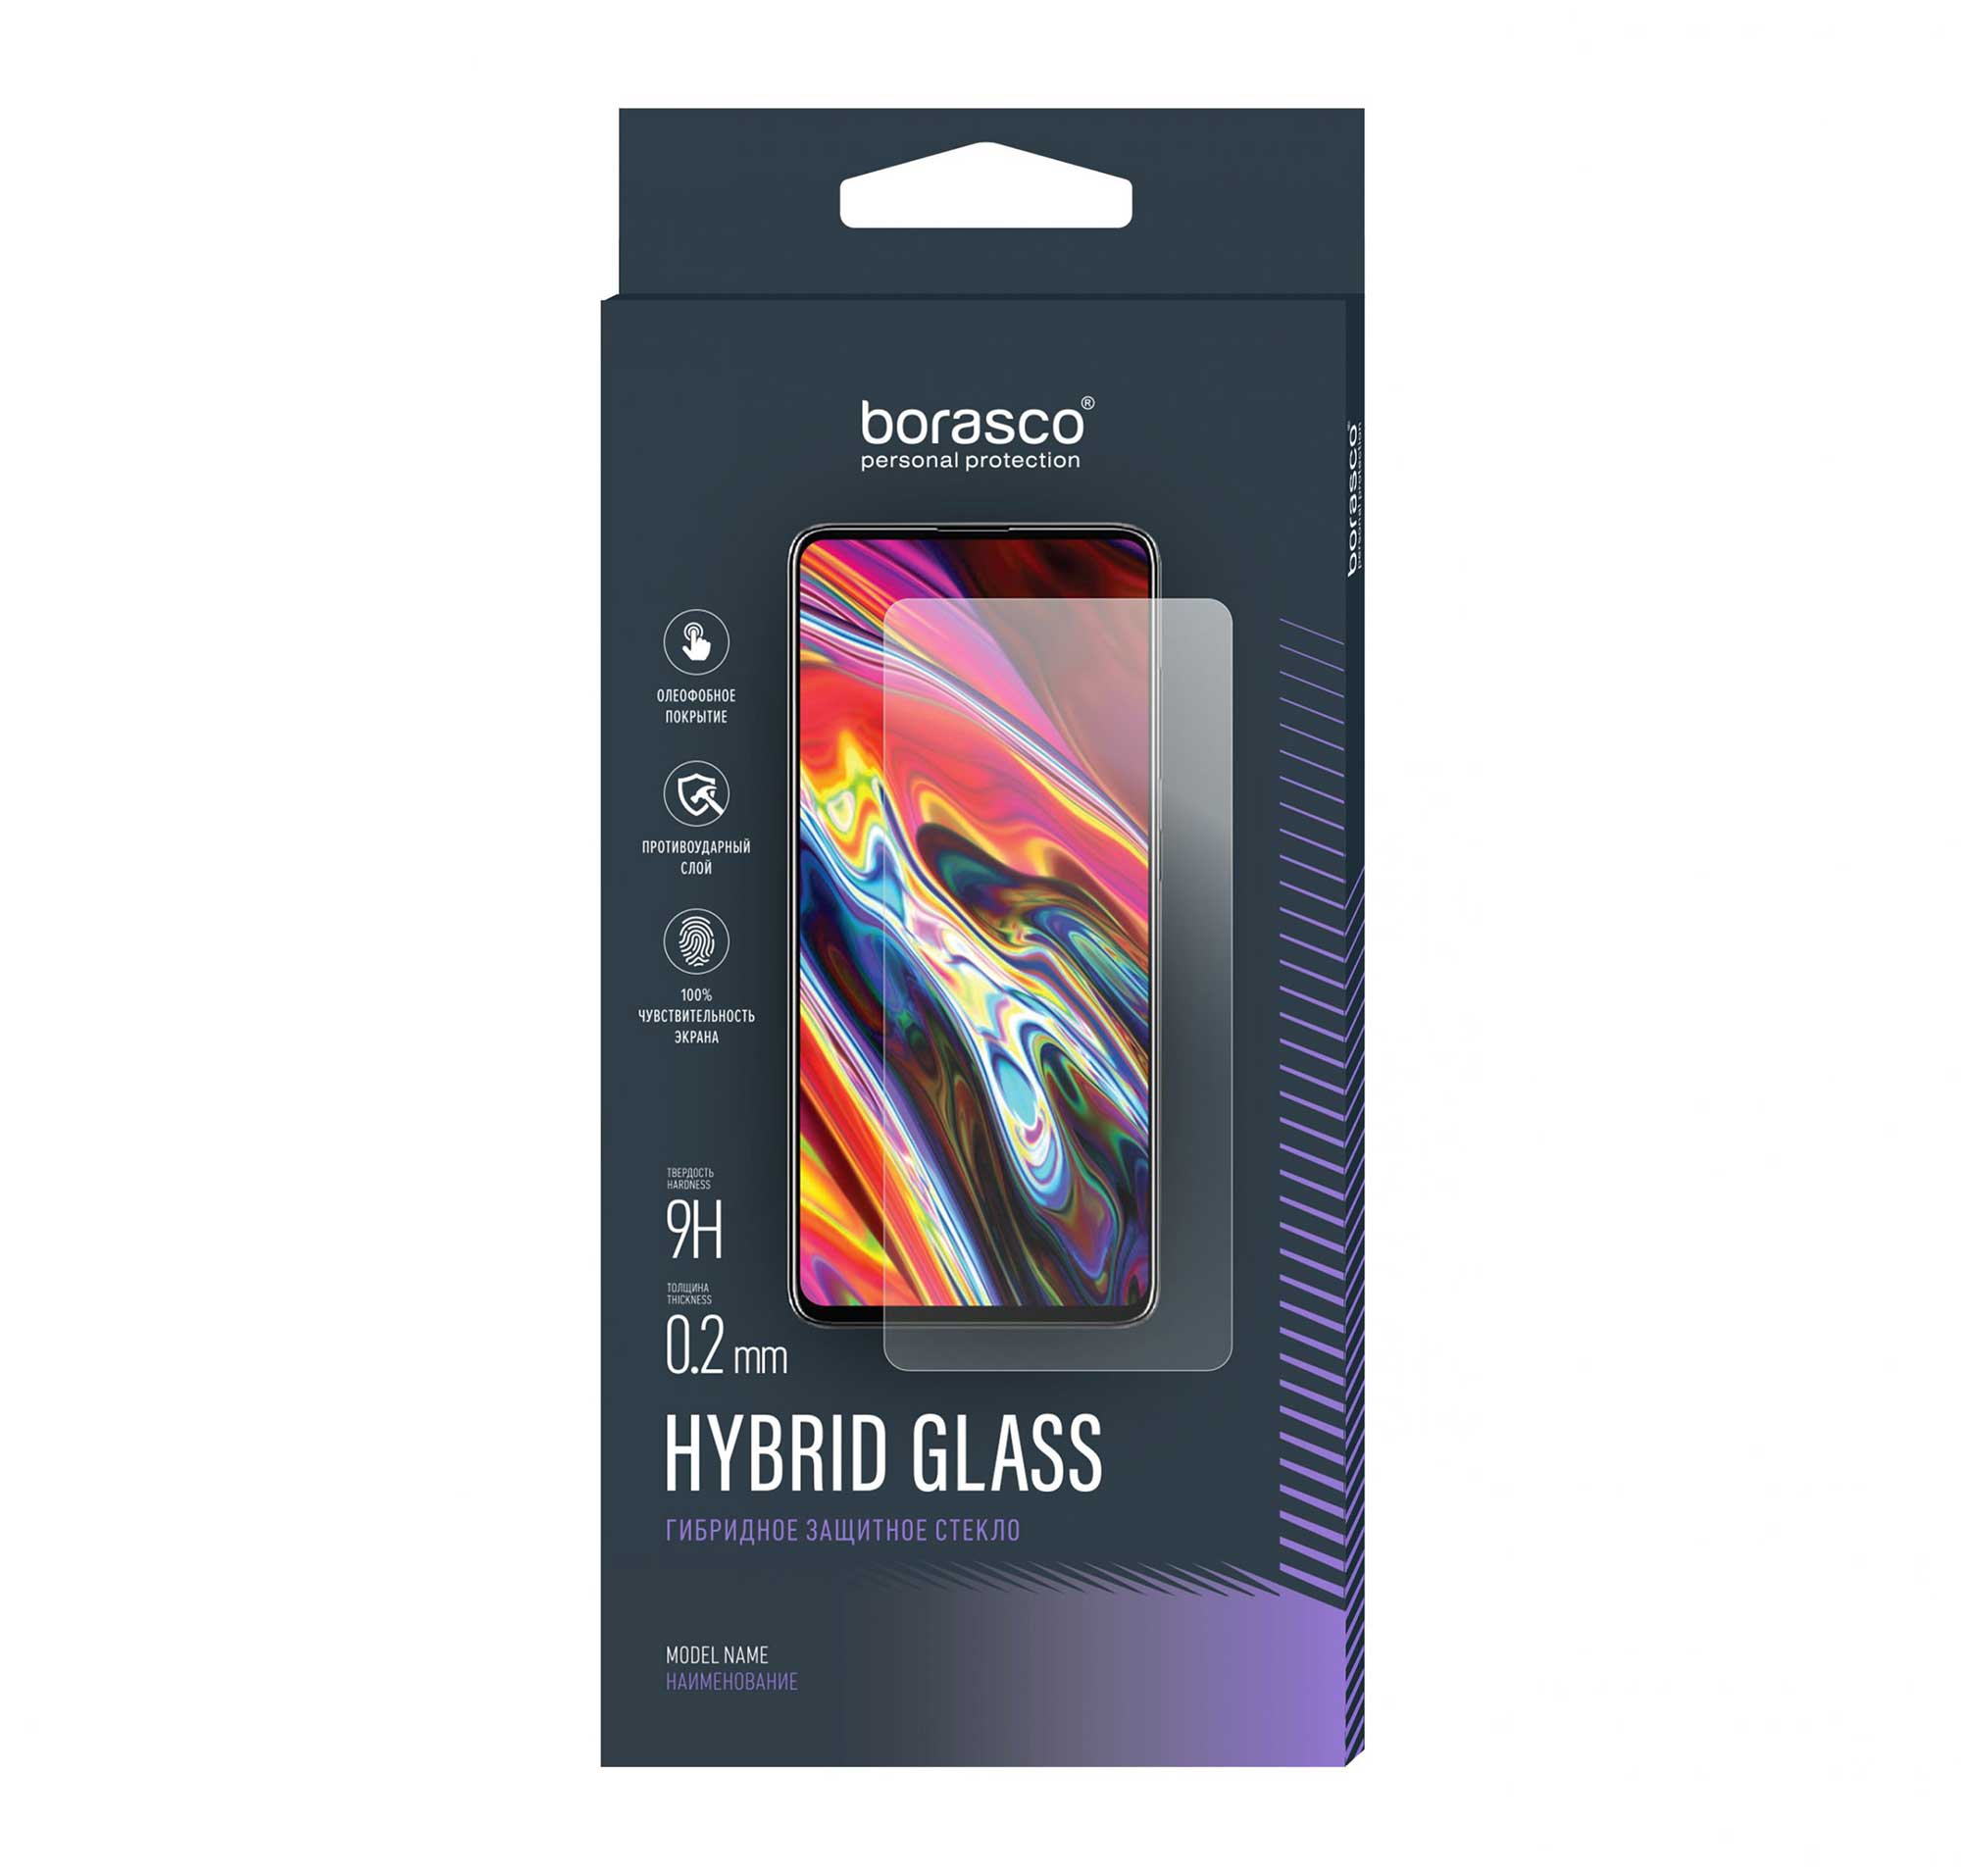 Защитное стекло Hybrid Glass для Vivo Y31 защитное стекло для vivo v20 и vivo v20se стекло на виво в20 и виво в20се в комплекте 2 стекла